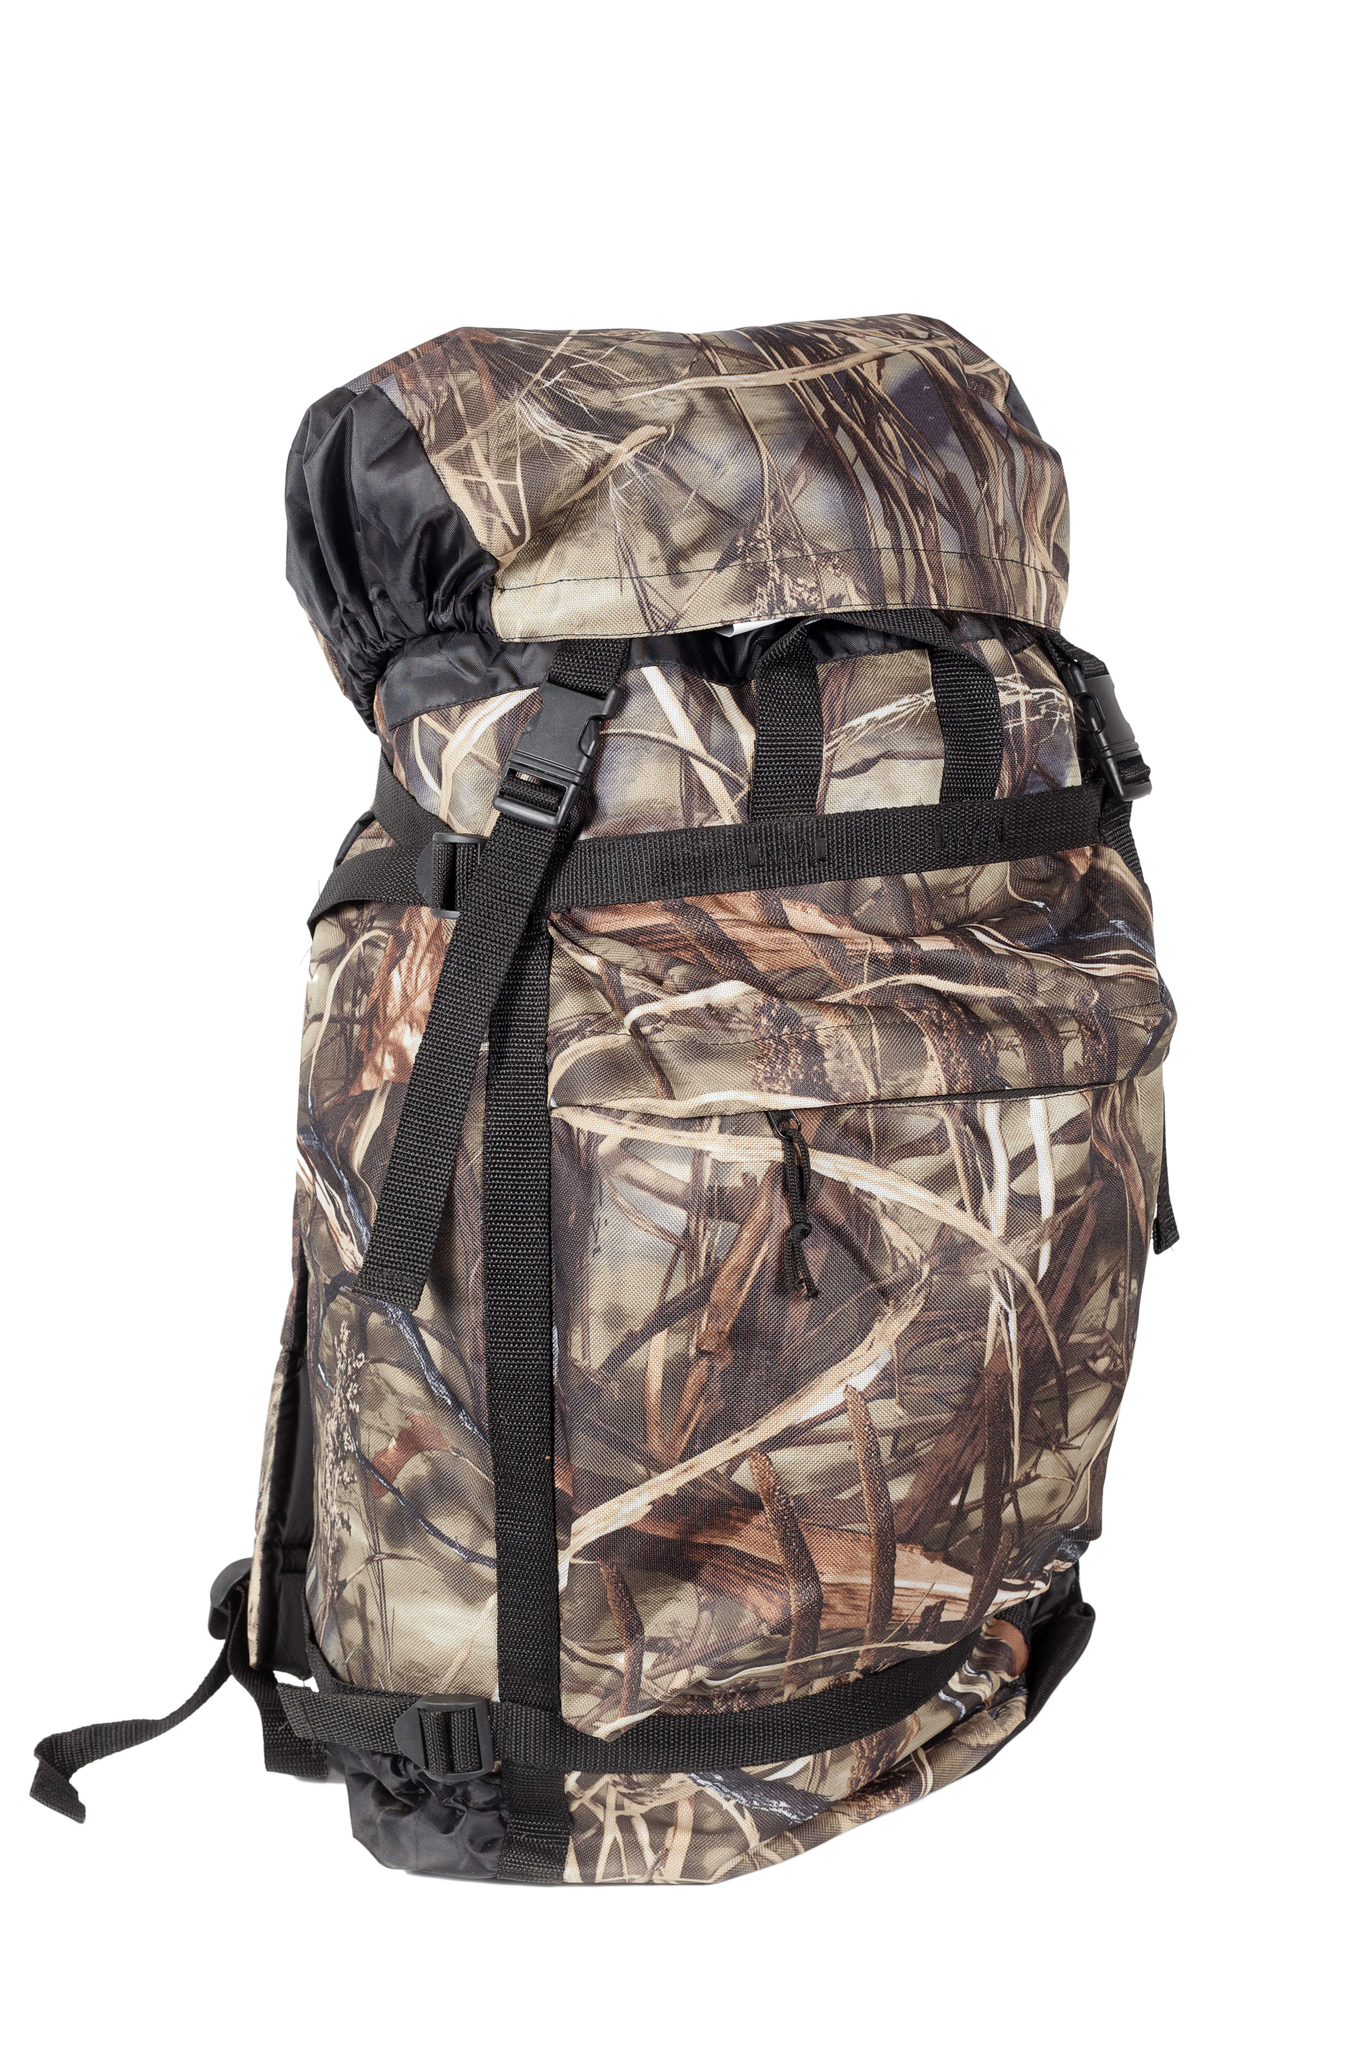 фото Туристический рюкзак huntsman боровик №60 60 л коричневый/бежевый